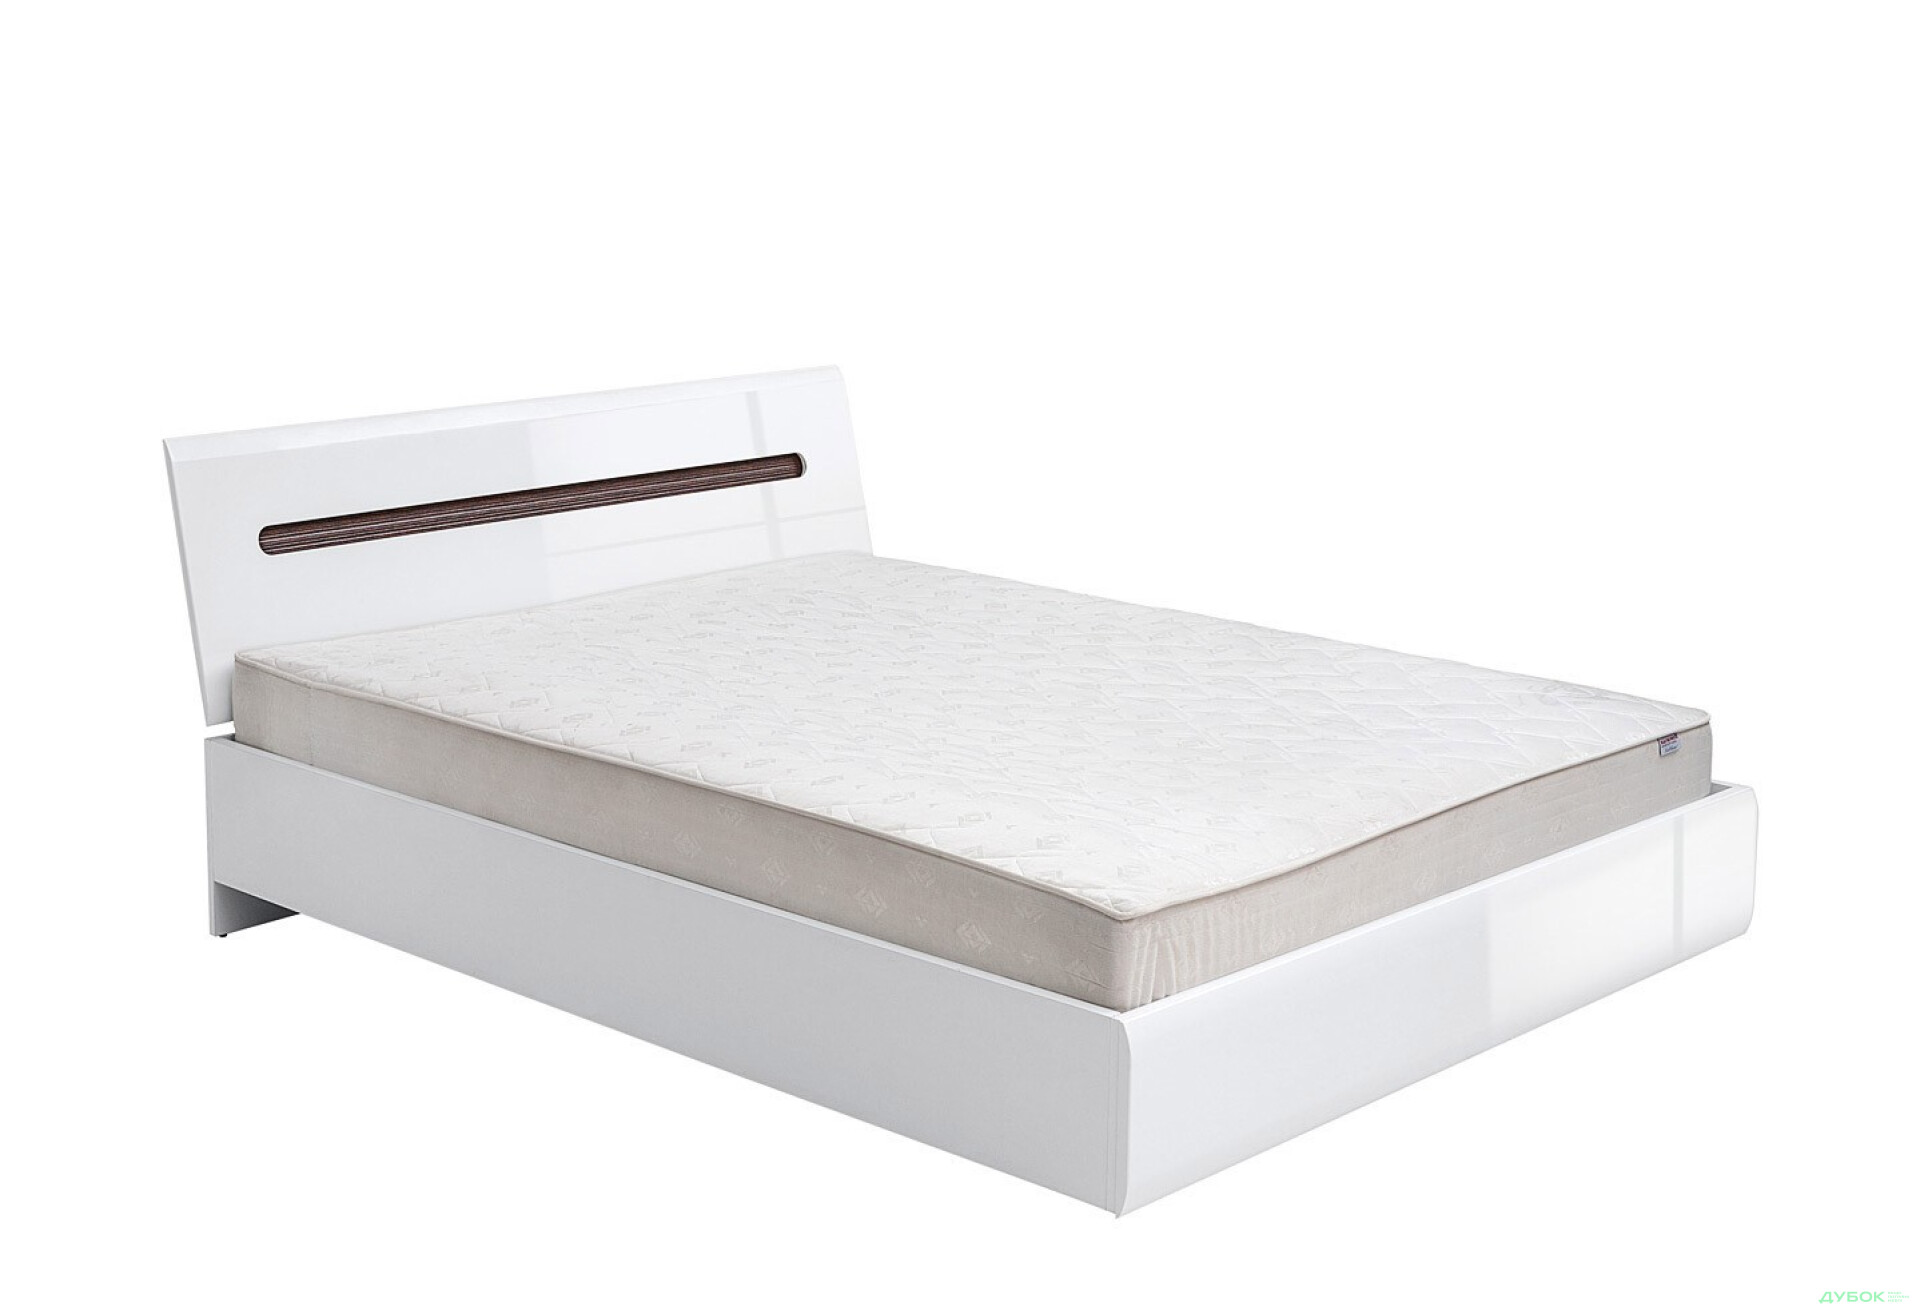 Фото 2 - Кровать ВМК Ацтека (без вклада) 160х200 см, белая